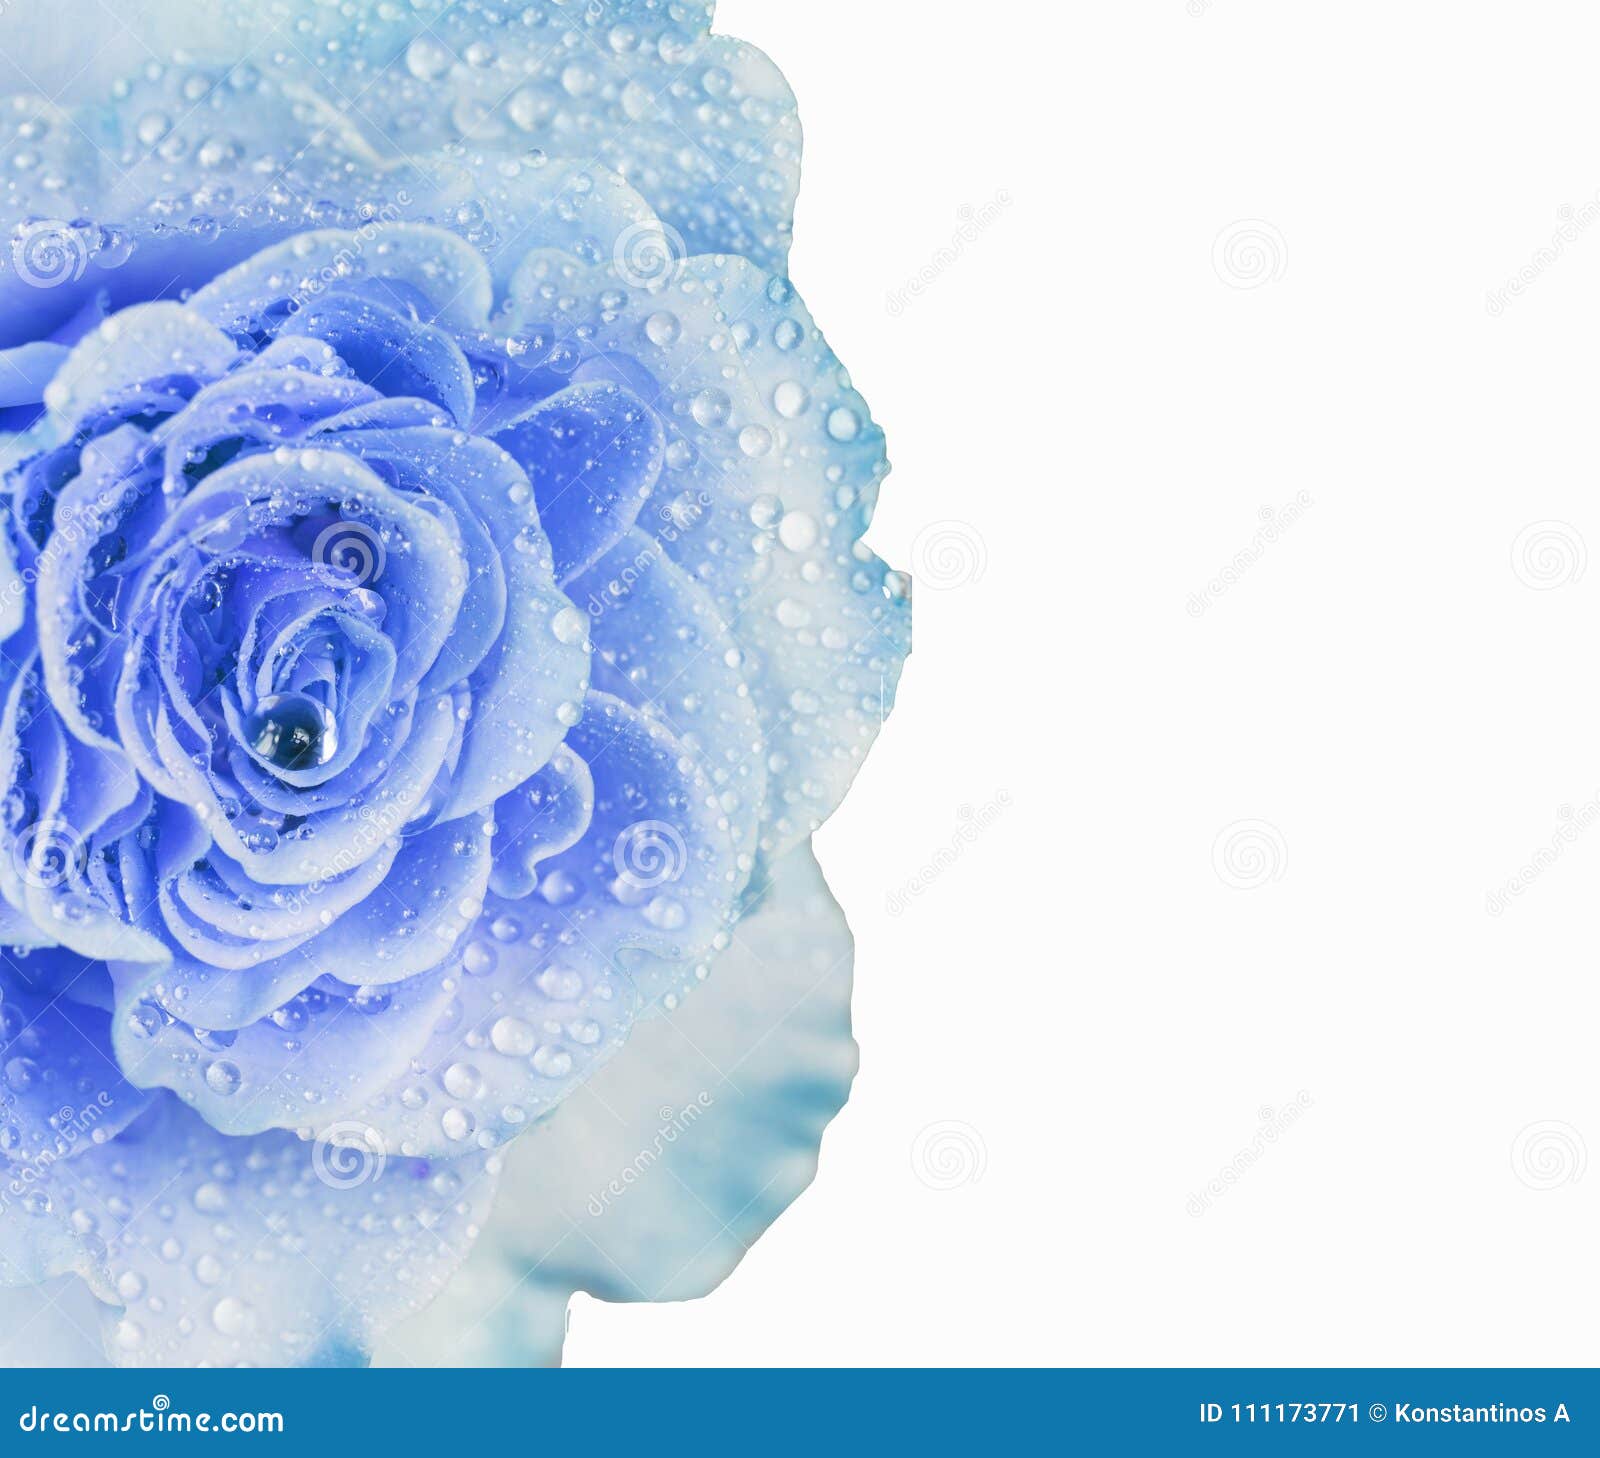 Fond De Spign De Rose De Bleu D'isolement Dans Le Blanc Image stock - Image  du conception, sensible: 111173771